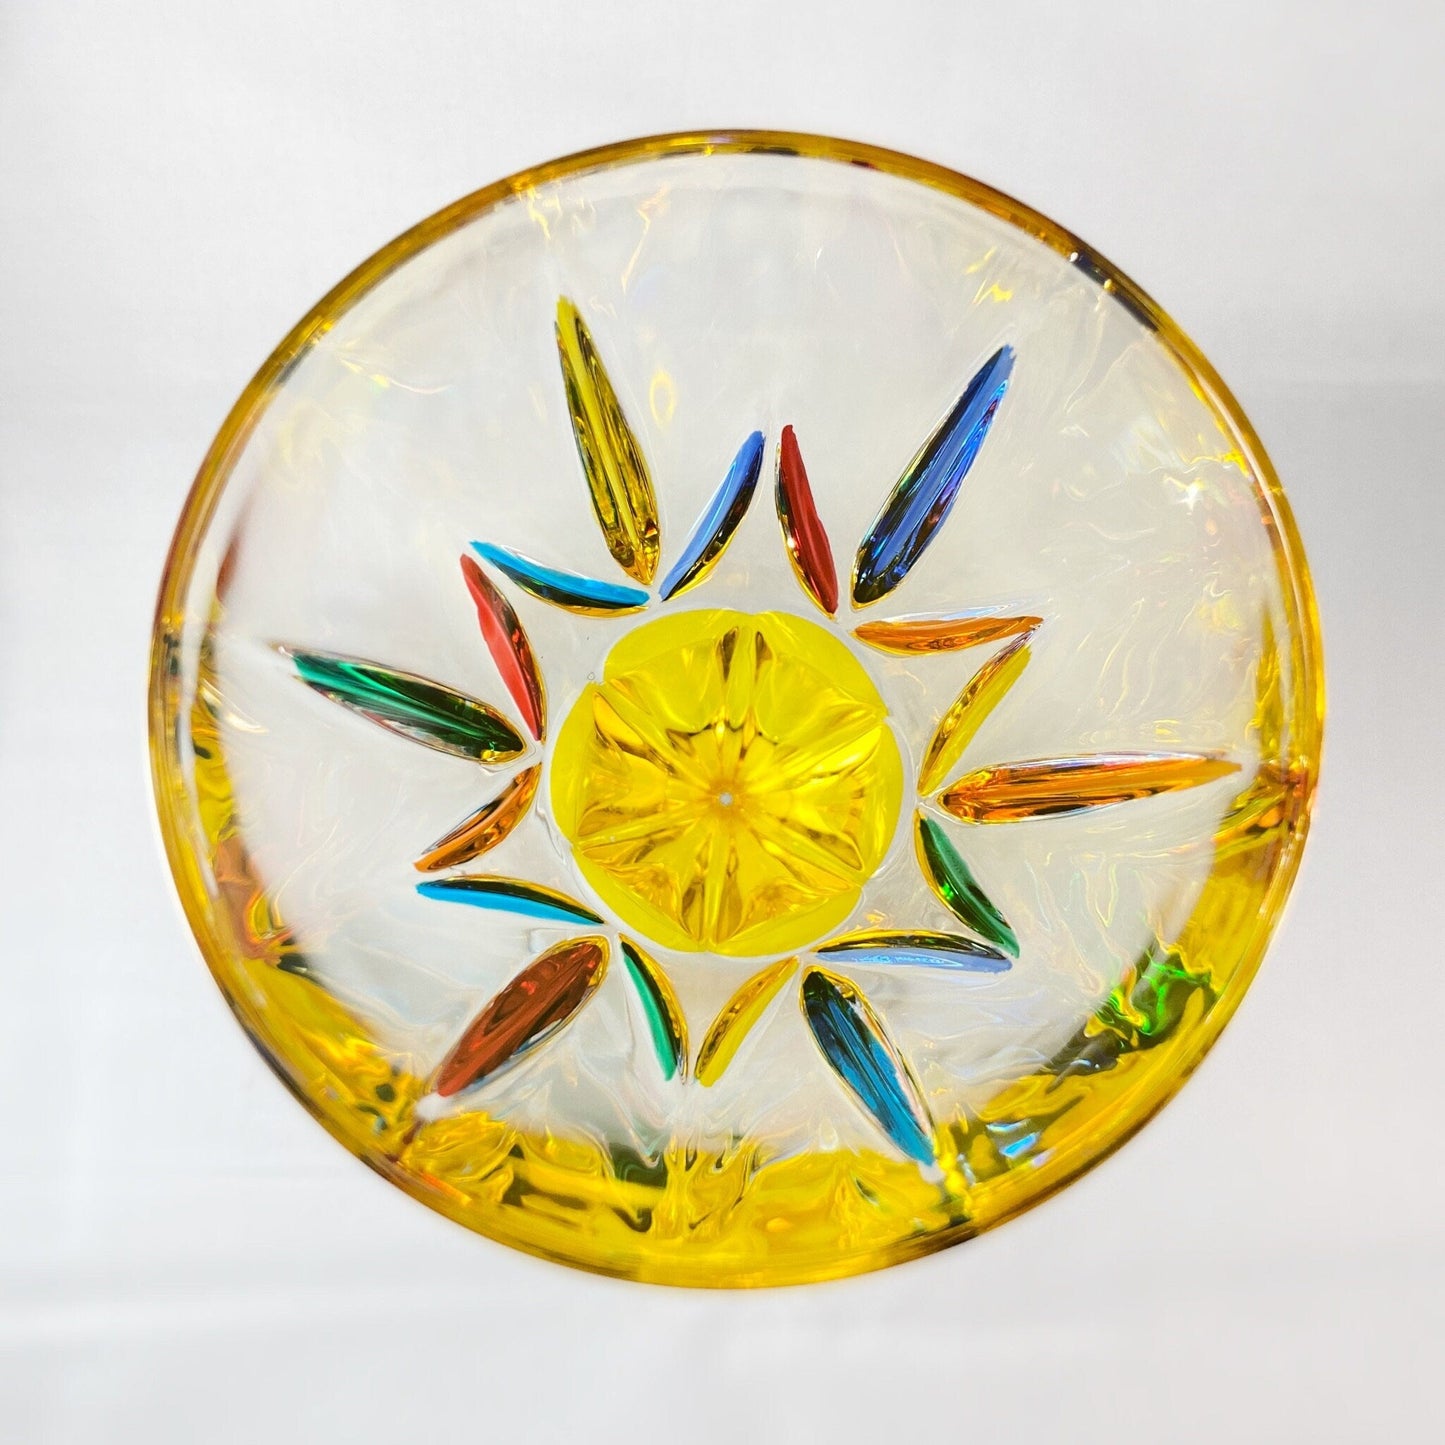 Yellow Stem Chic Venetian Wine Glass - Handmade in Italy, Colorful Murano Glass